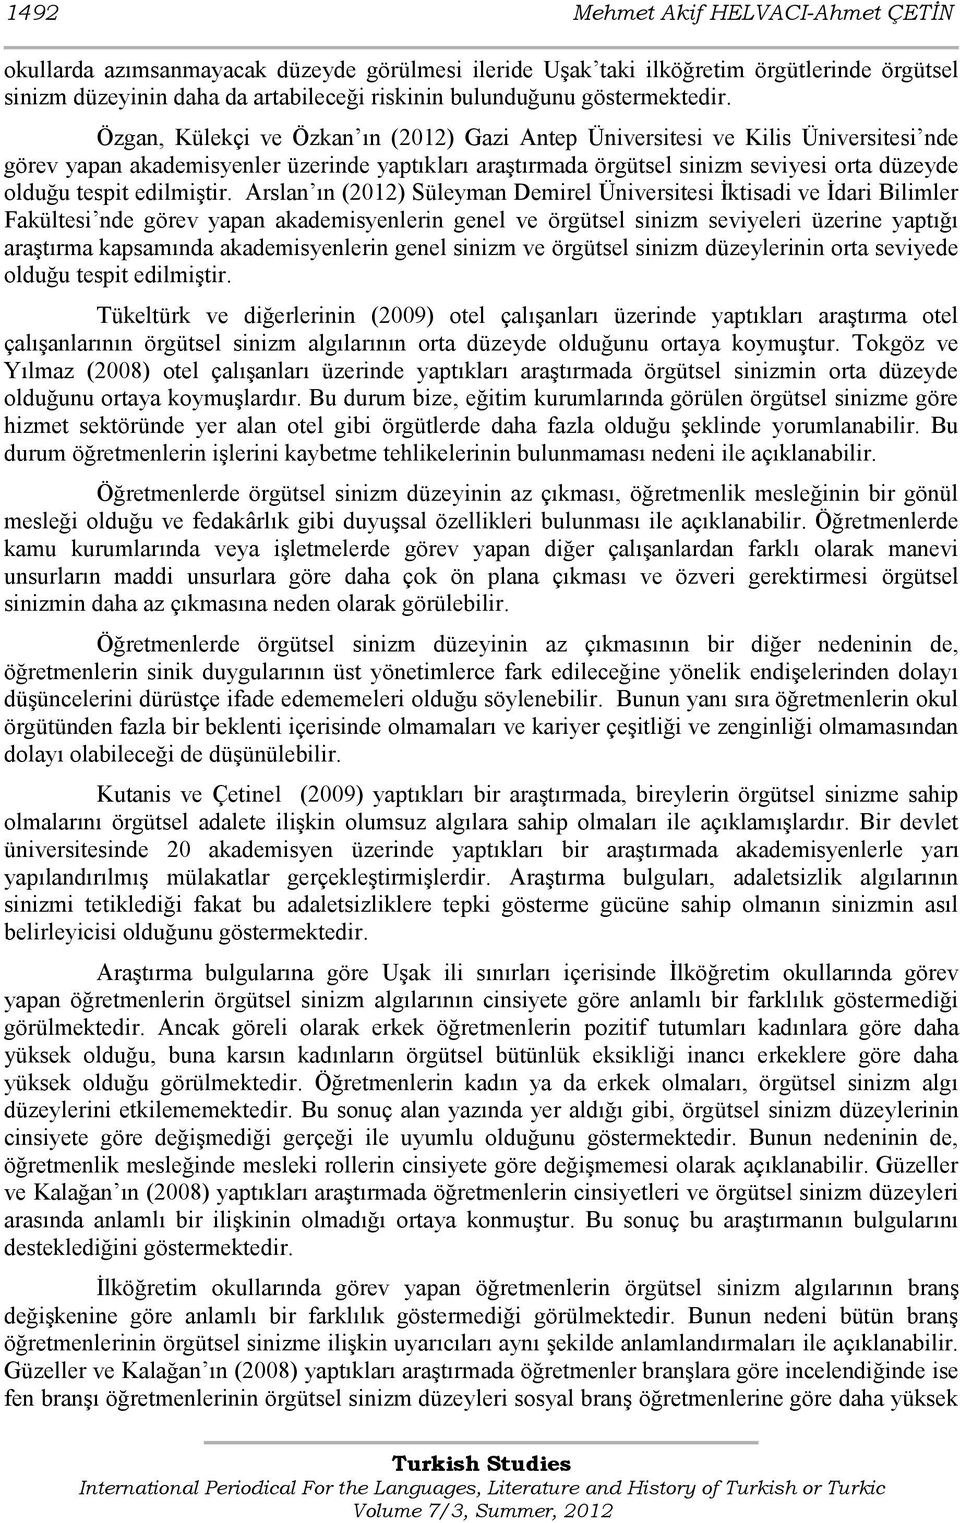 Özgan, Külekçi ve Özkan ın (2012) Gazi Antep Üniversitesi ve Kilis Üniversitesi nde görev yapan akademisyenler üzerinde yaptıkları araştırmada örgütsel sinizm seviyesi orta düzeyde olduğu tespit